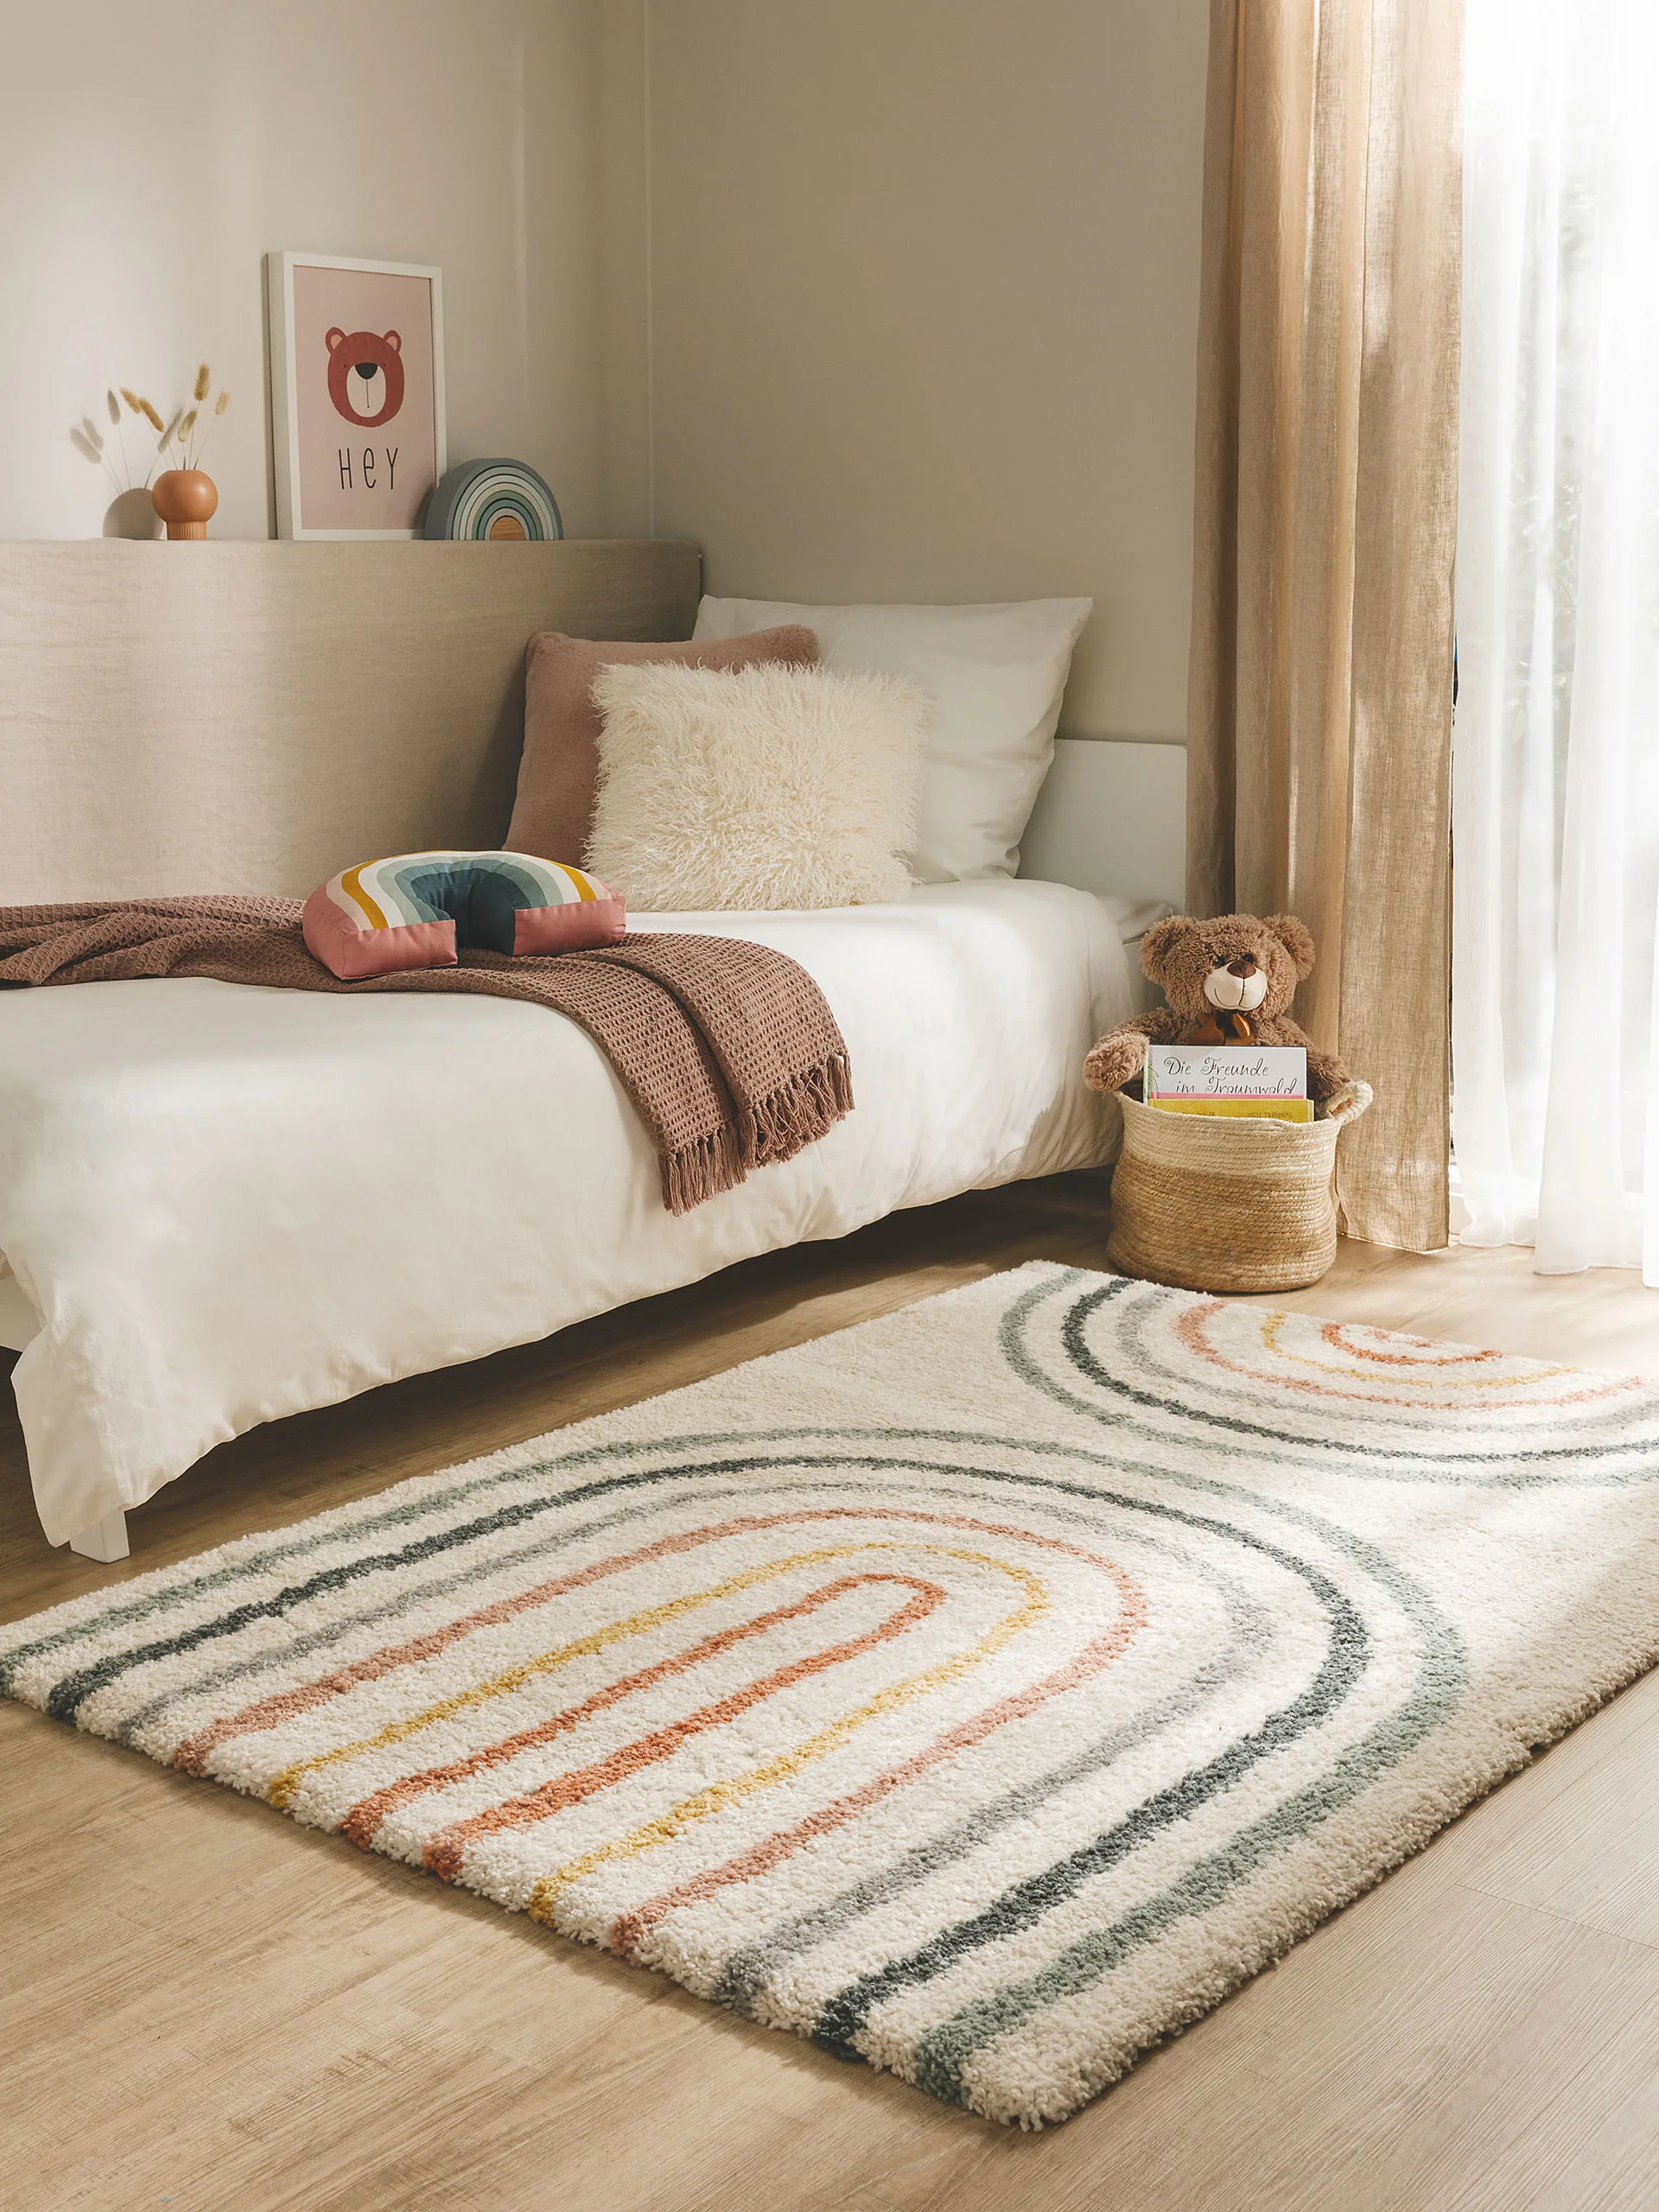 Kleiner, bunter Teppich im Kinderzimmer mit Regenbogen-Design vor einem Kinderbett, auf dem Kissen, eine Kuscheldecke und ein Kuscheltier liegen